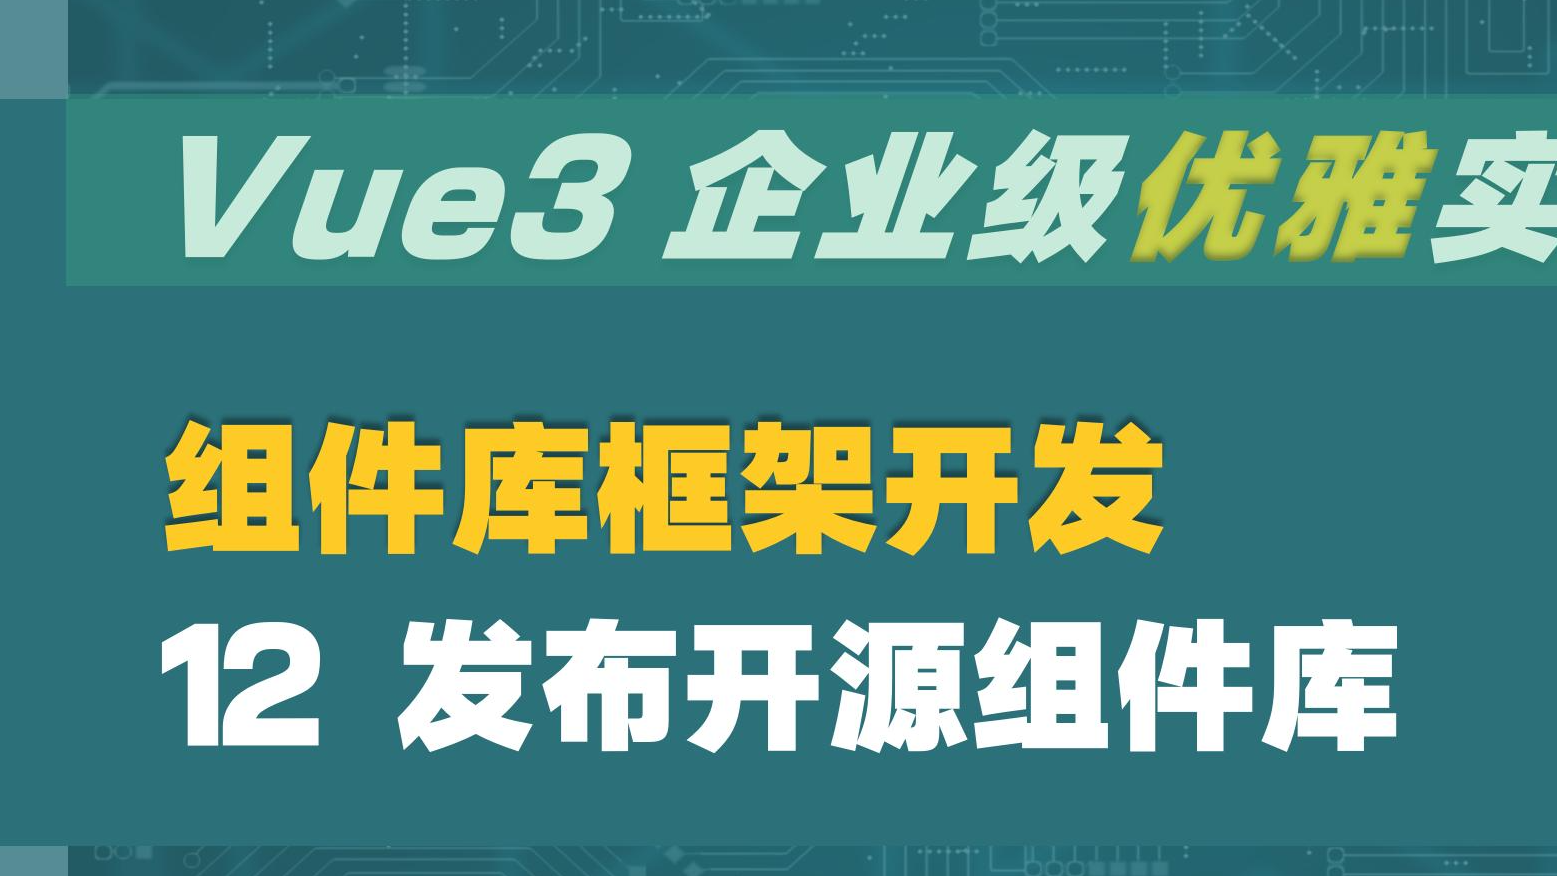  Vue3 企业级优雅实战 - 组件库框架 - 12 发布开源组件库